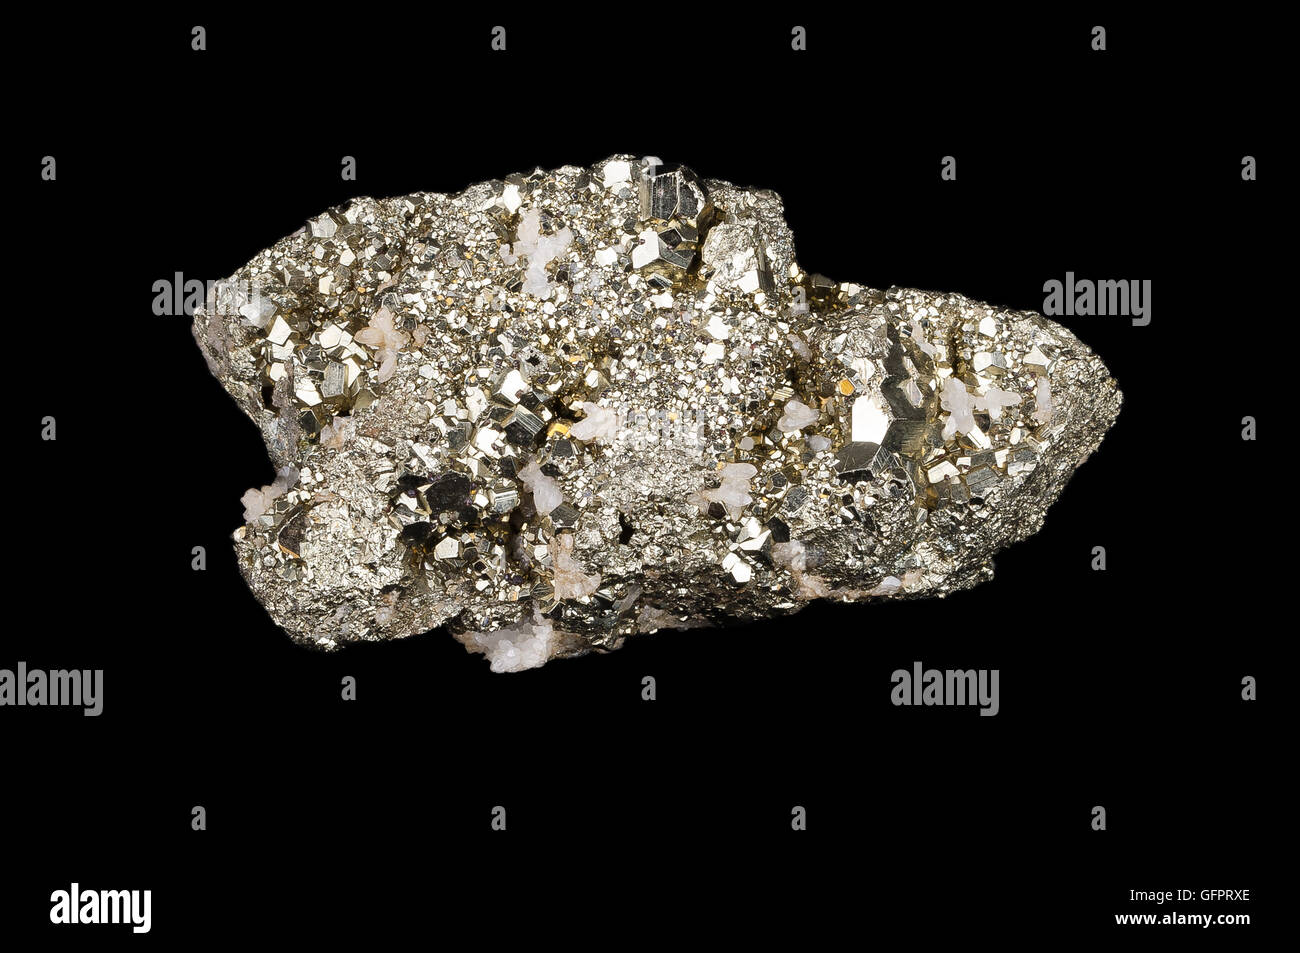 Pyrit auf schwarz, auch bekannt als Eisen Pyrit und Fools gold, ist ein Eisen-Sulfid mit der chemischen Formel FeS2. Stockfoto